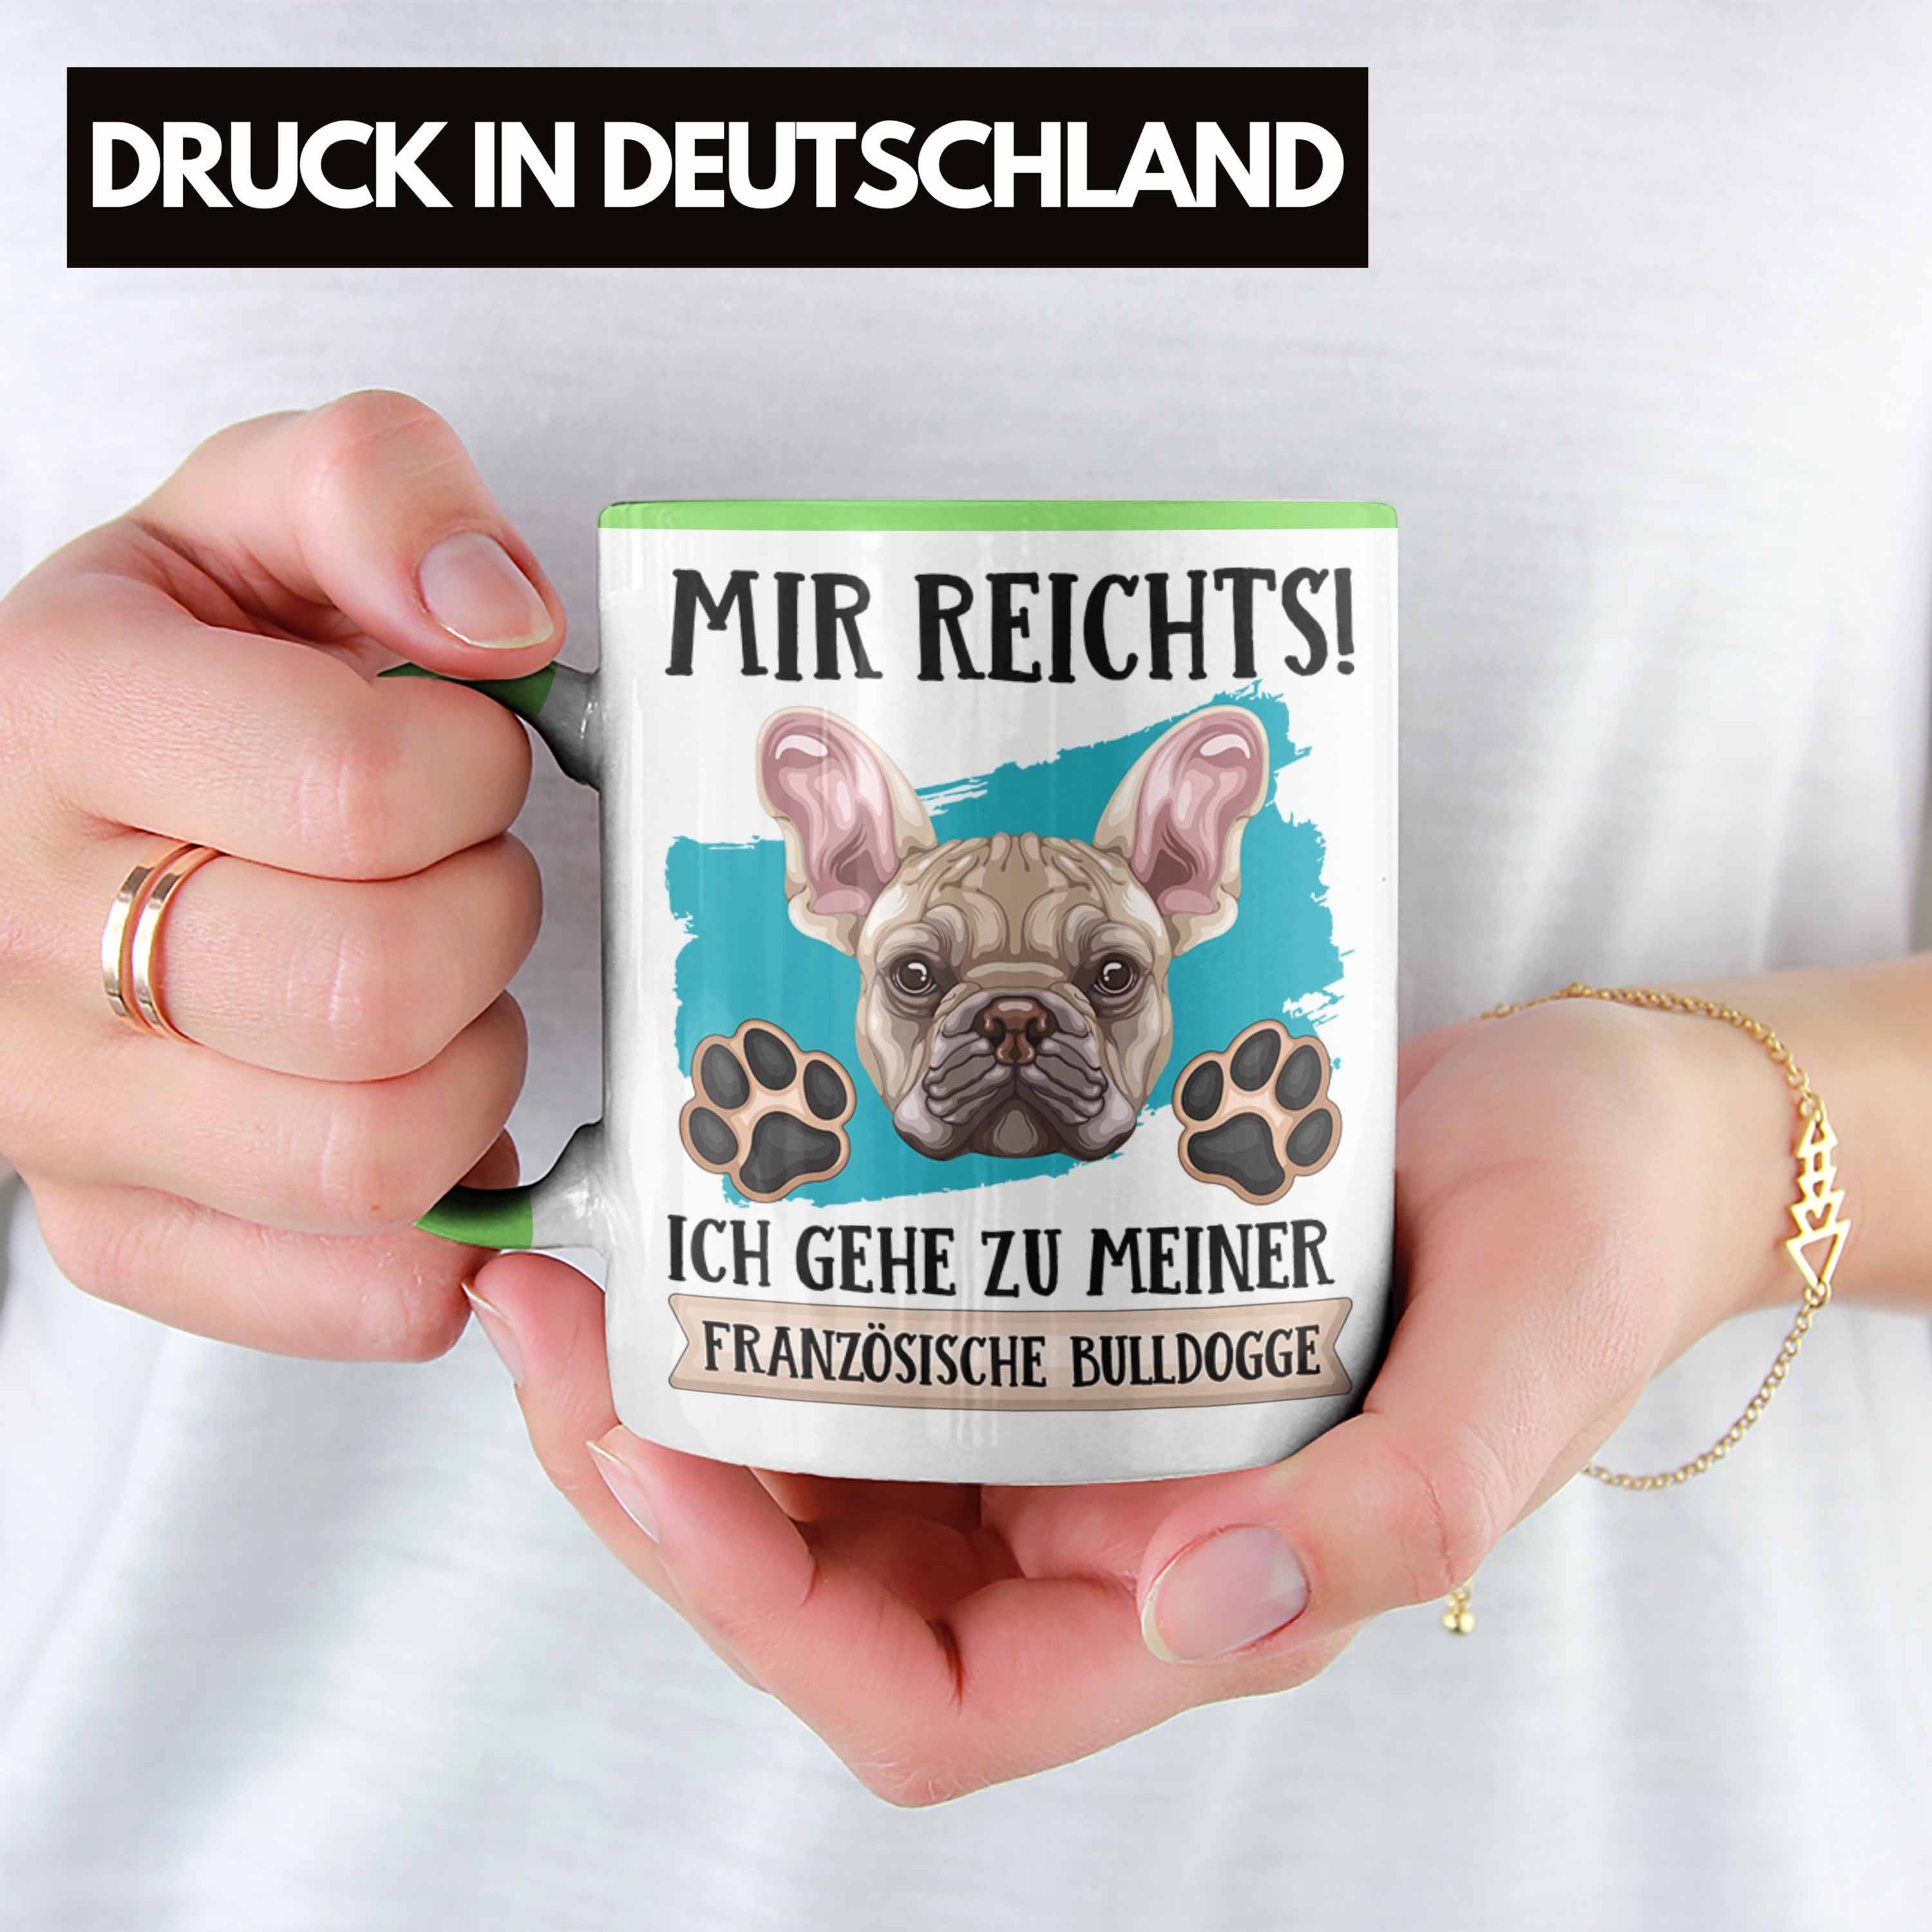 Trendation Tasse Französische Bulldogge Besitzer Tasse Lustiger Geschen Geschenk Spruch Grün